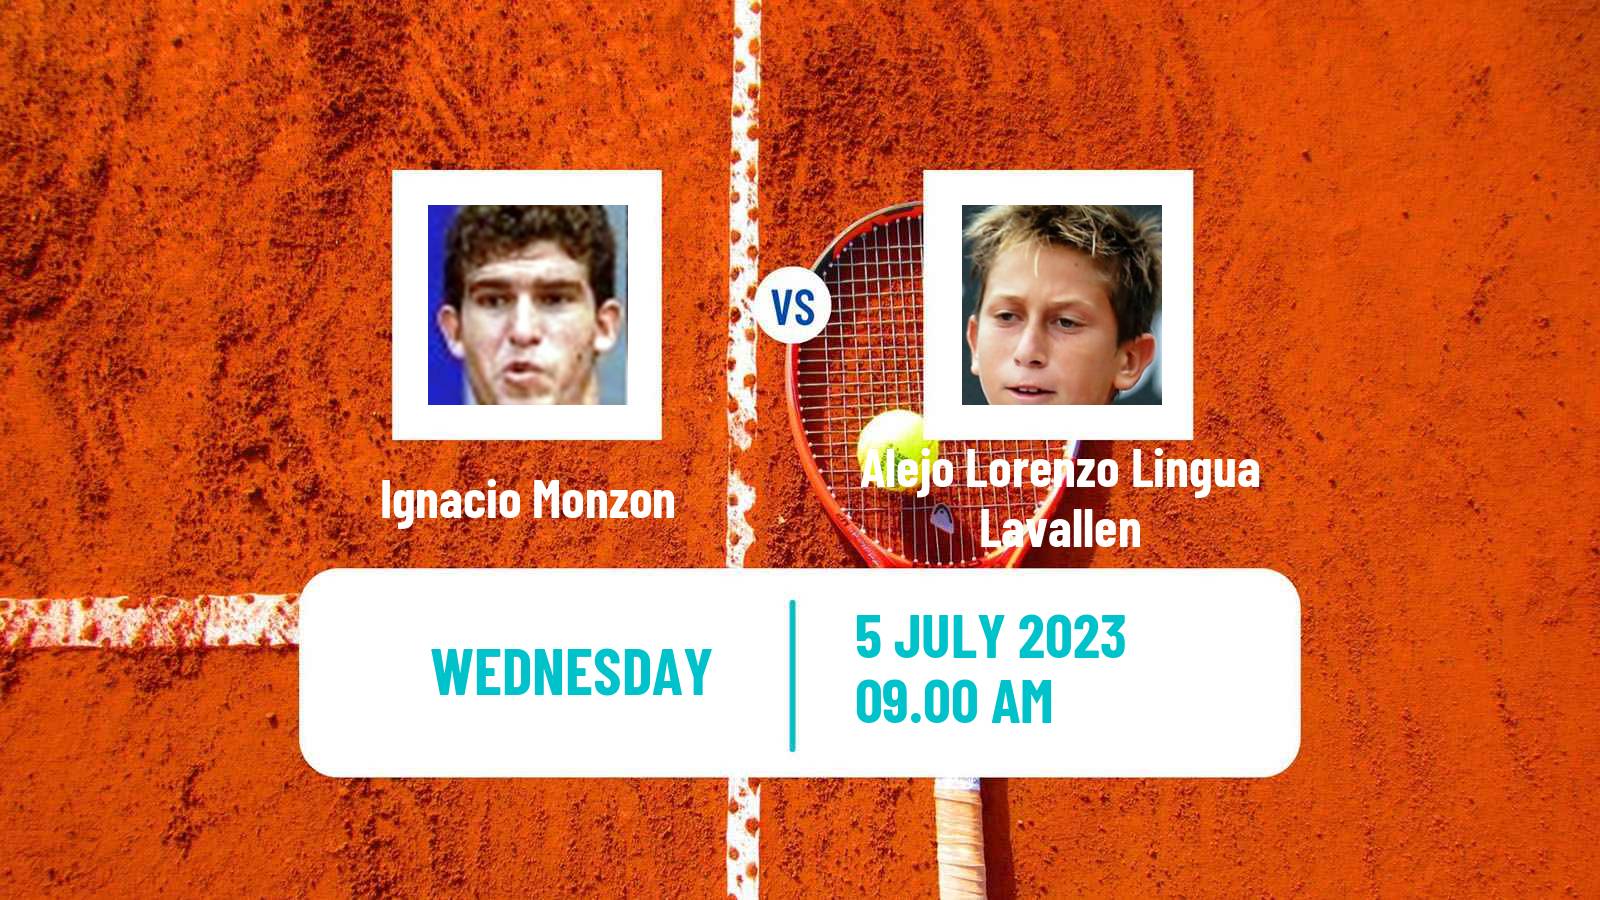 Tennis Santa Fe Challenger Men Ignacio Monzon - Alejo Lorenzo Lingua Lavallen